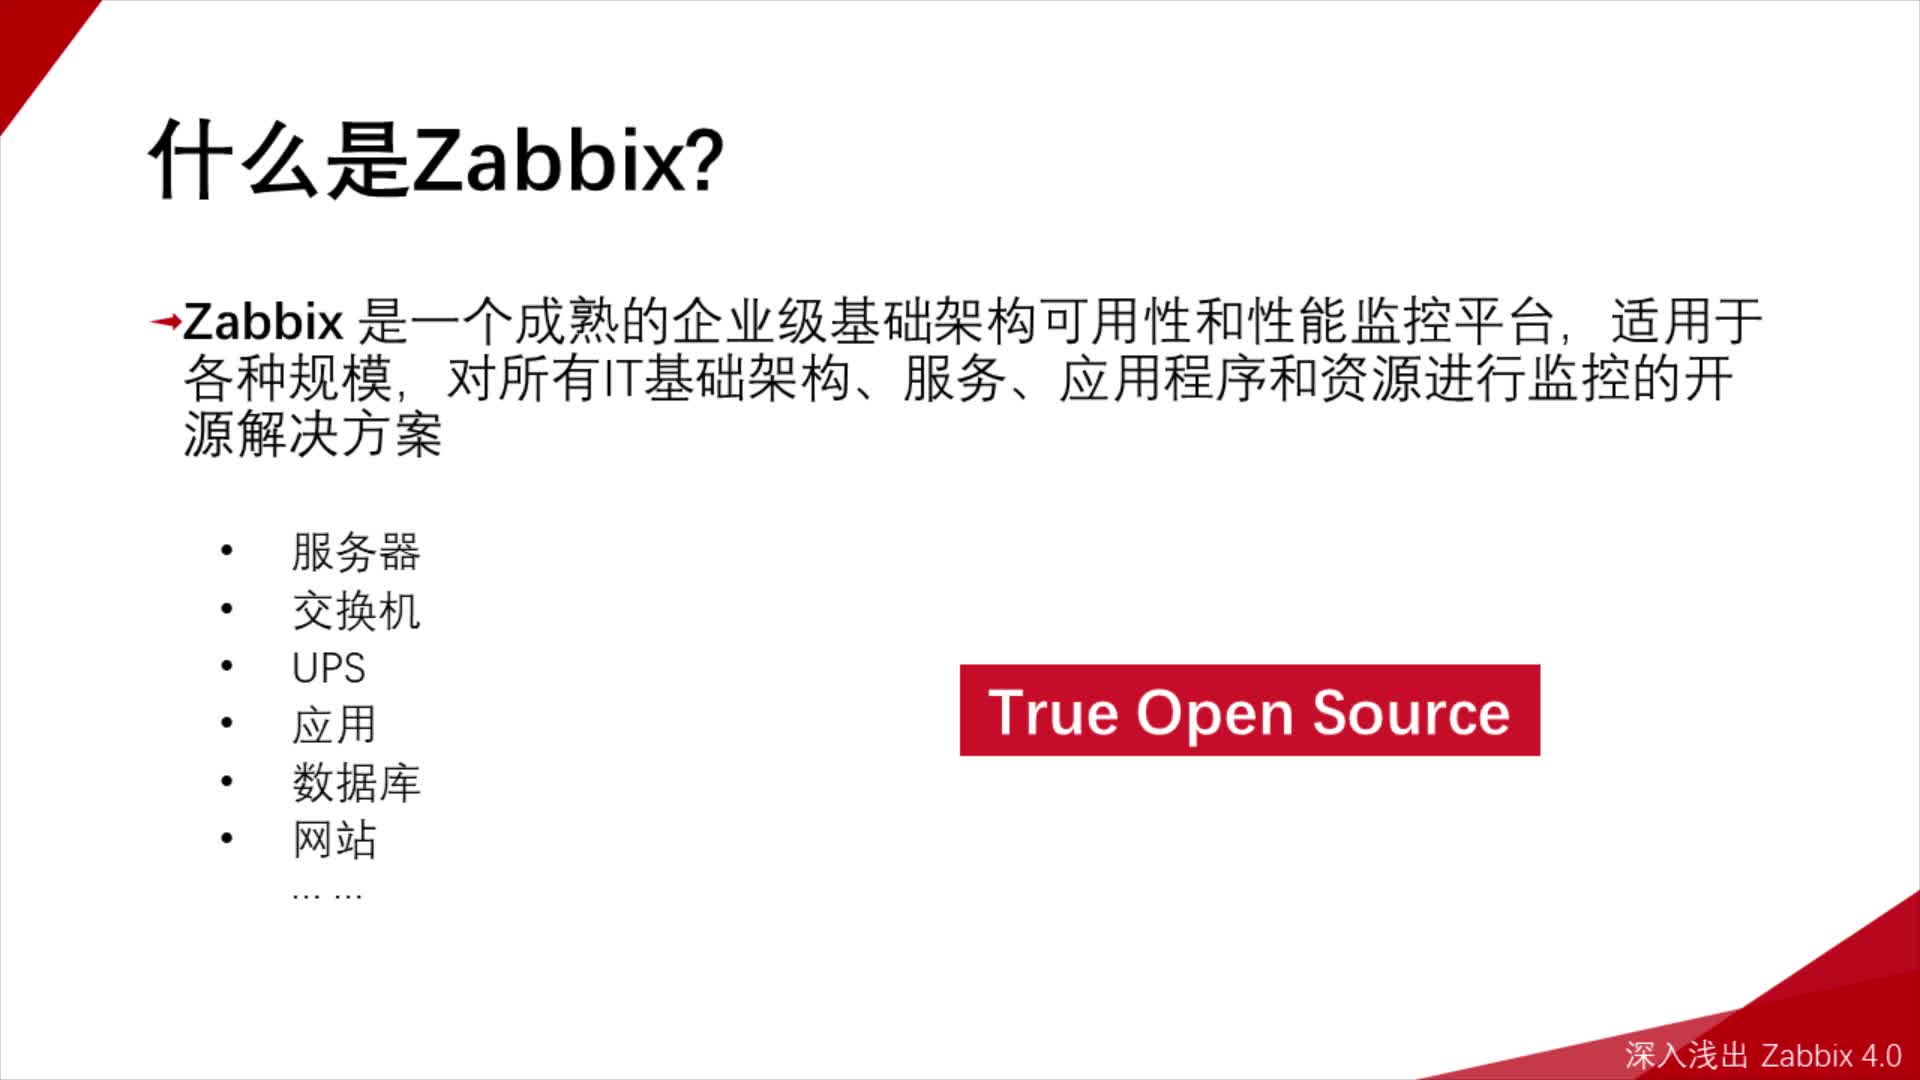 深入浅出 Zabbix 4.0（基于 zabbix 4.2）